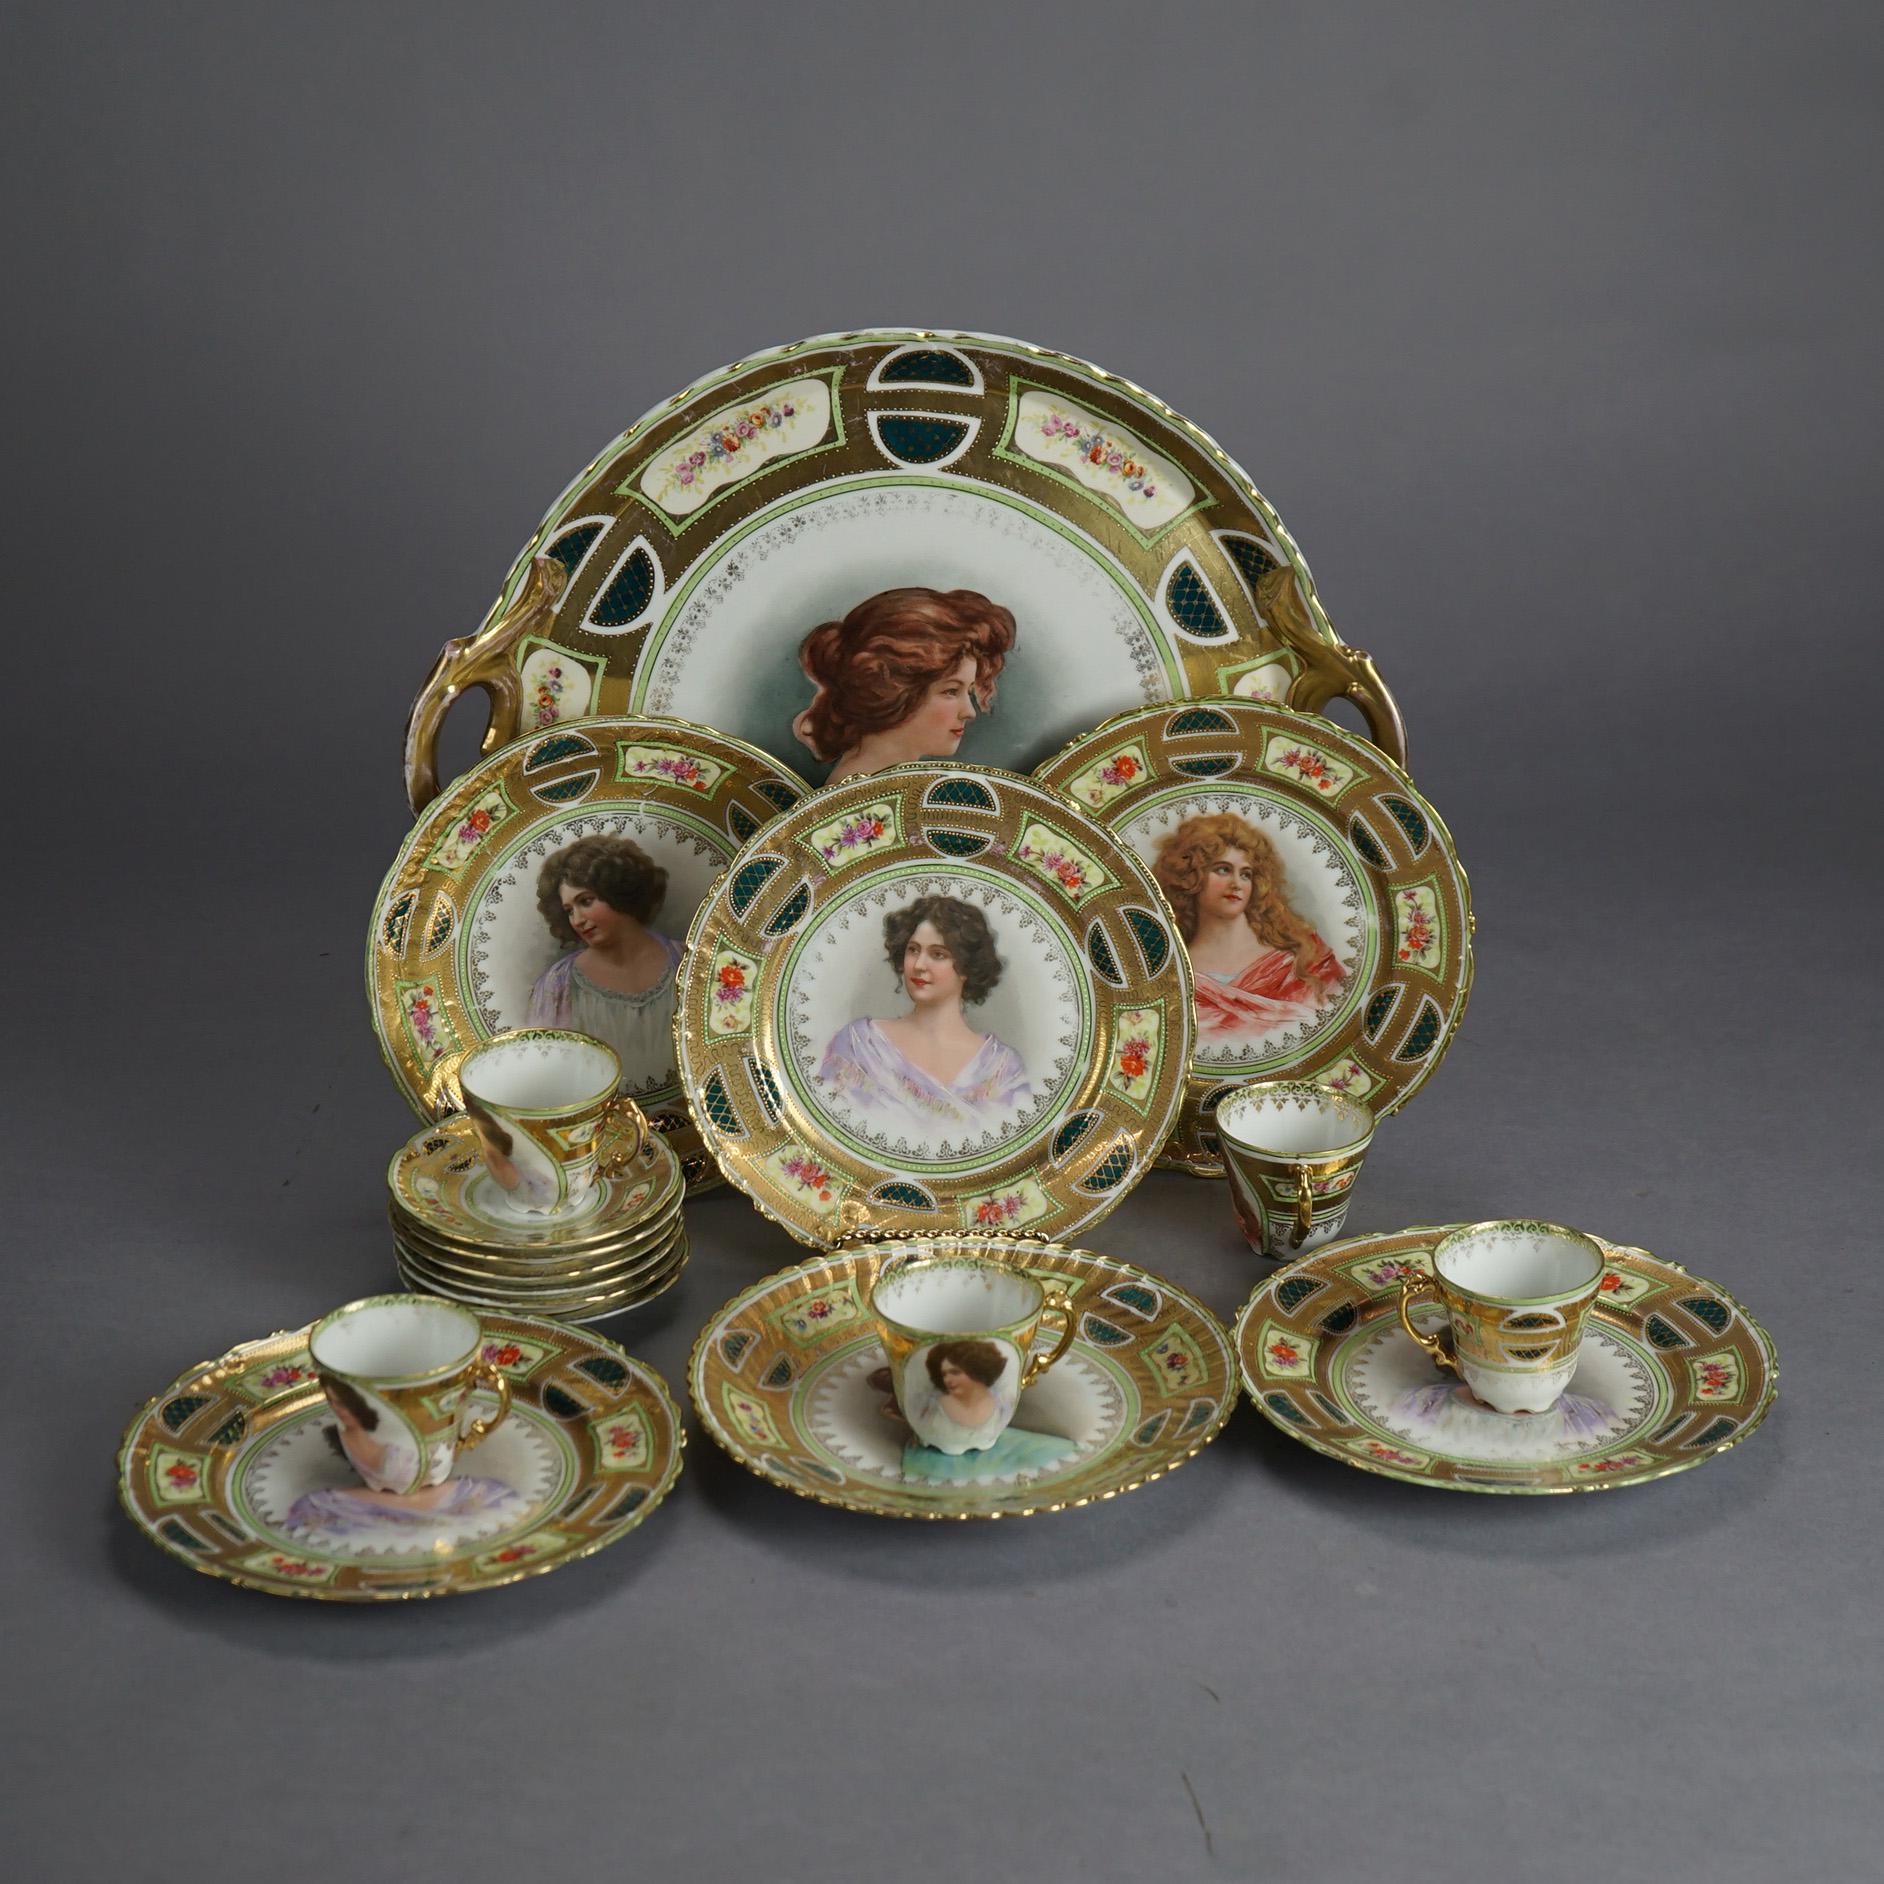 17 Pieces of Antique Victoria Austrian Heavily Gilt Porcelain Dishes, Portraits of Women, C1890

Measure - 5 cups 2.5